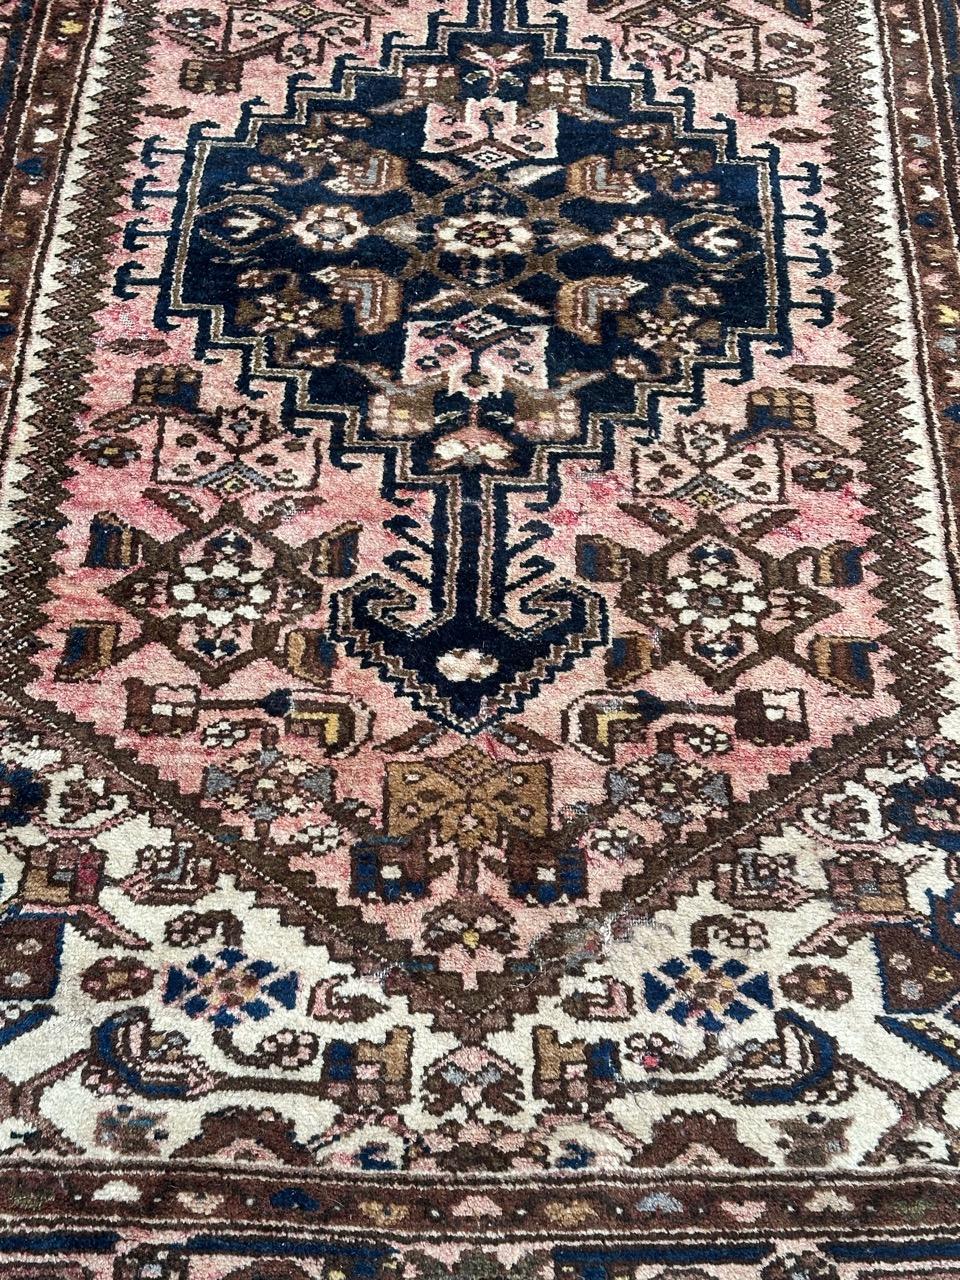 Hübscher rustikaler Hamadan-Teppich aus der Mitte des Jahrhunderts mit schönen geometrischen und stilisierten Mustern und schönen Farben mit rosa, marineblau, creme, braun und grau, komplett handgeknüpft mit Wolle auf Baumwollbasis 
Einige